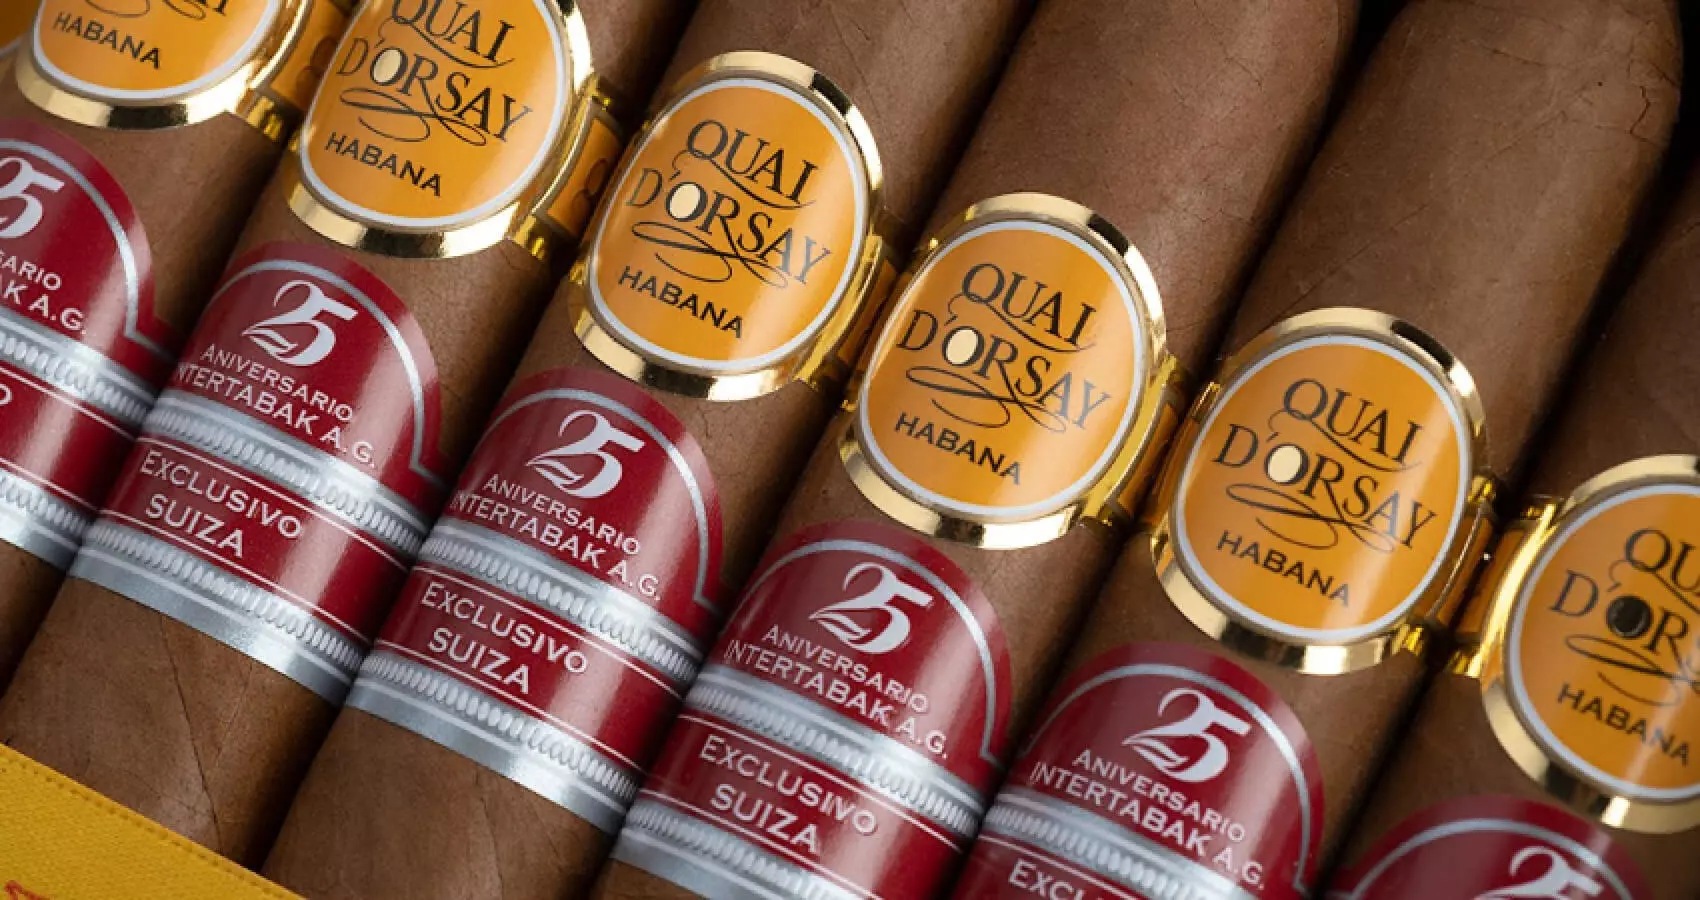 Six Quai Dorsay cigars lying around.